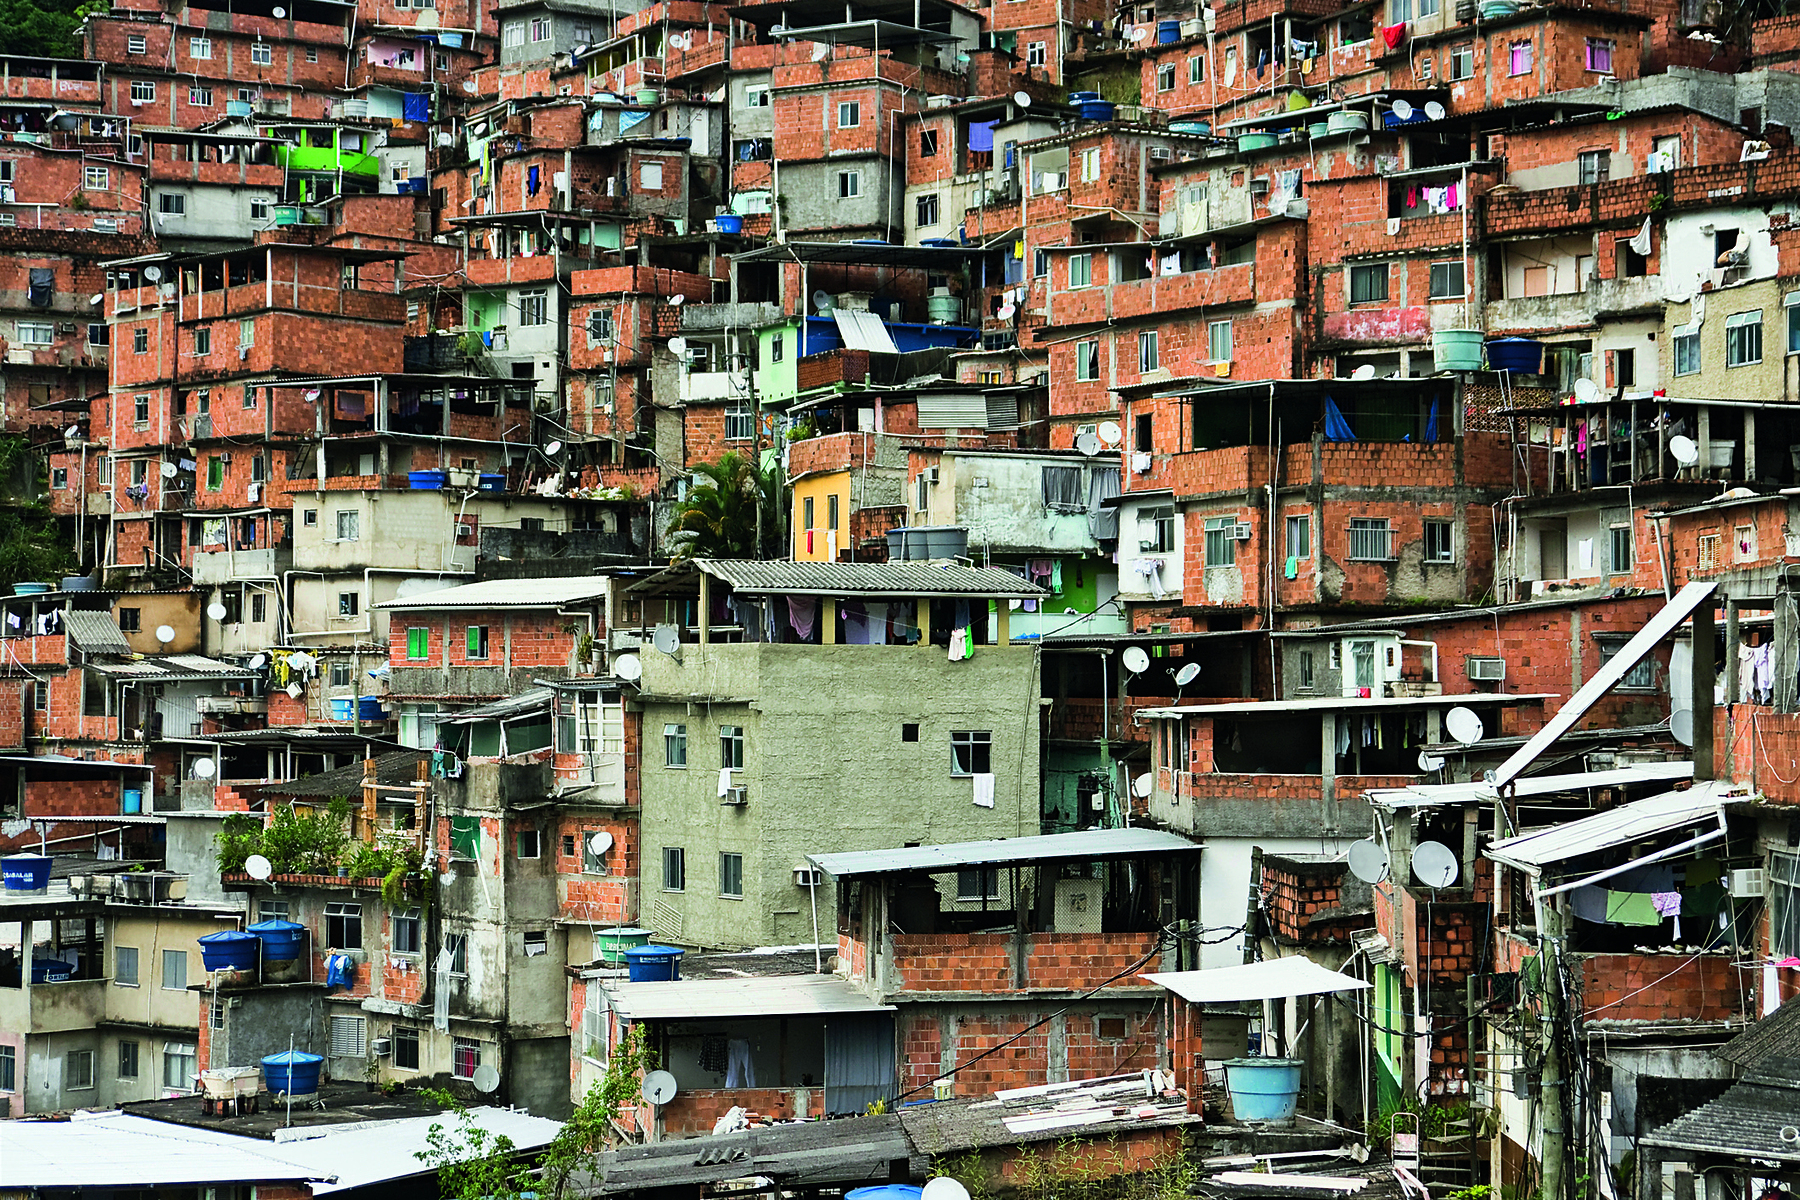 Fotografia. Vista geral de dezenas de casas aglomeradas, em um morro, com paredes em tons de marrom e algumas em cinza, construídas irregularmente.